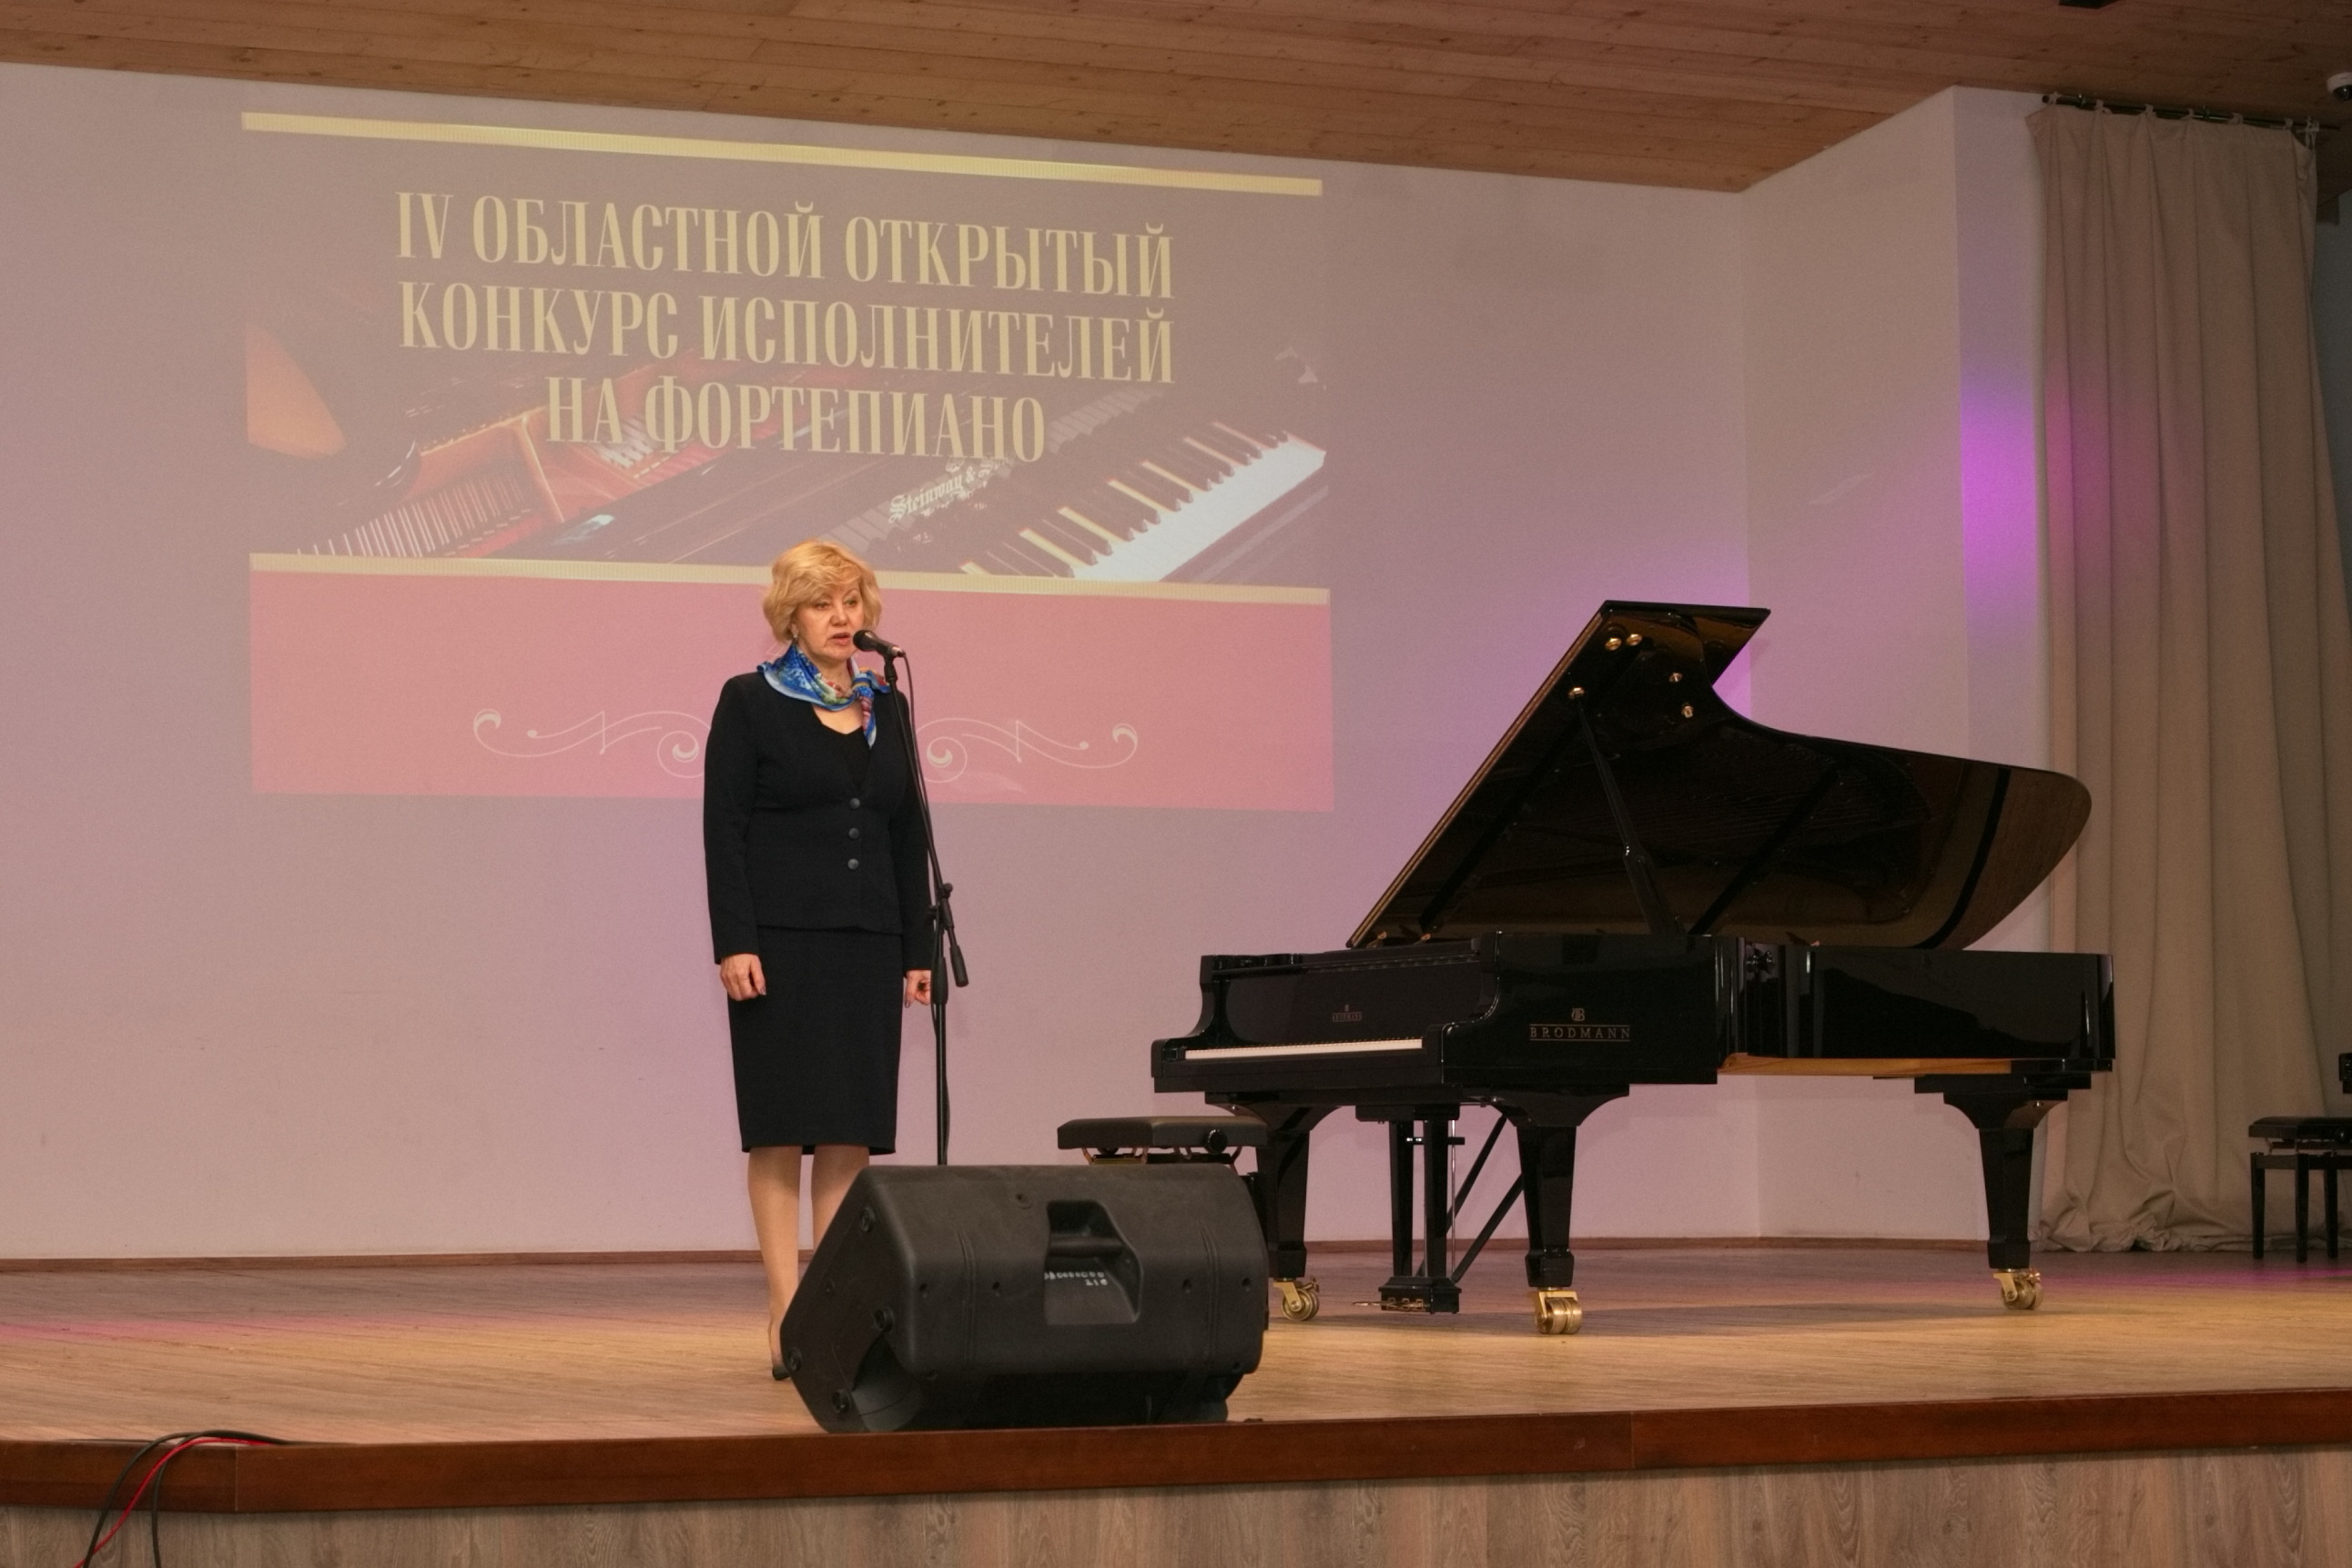 Результаты конкурса фортепиано. Прошедший музыкальный конкурс в Костроме.